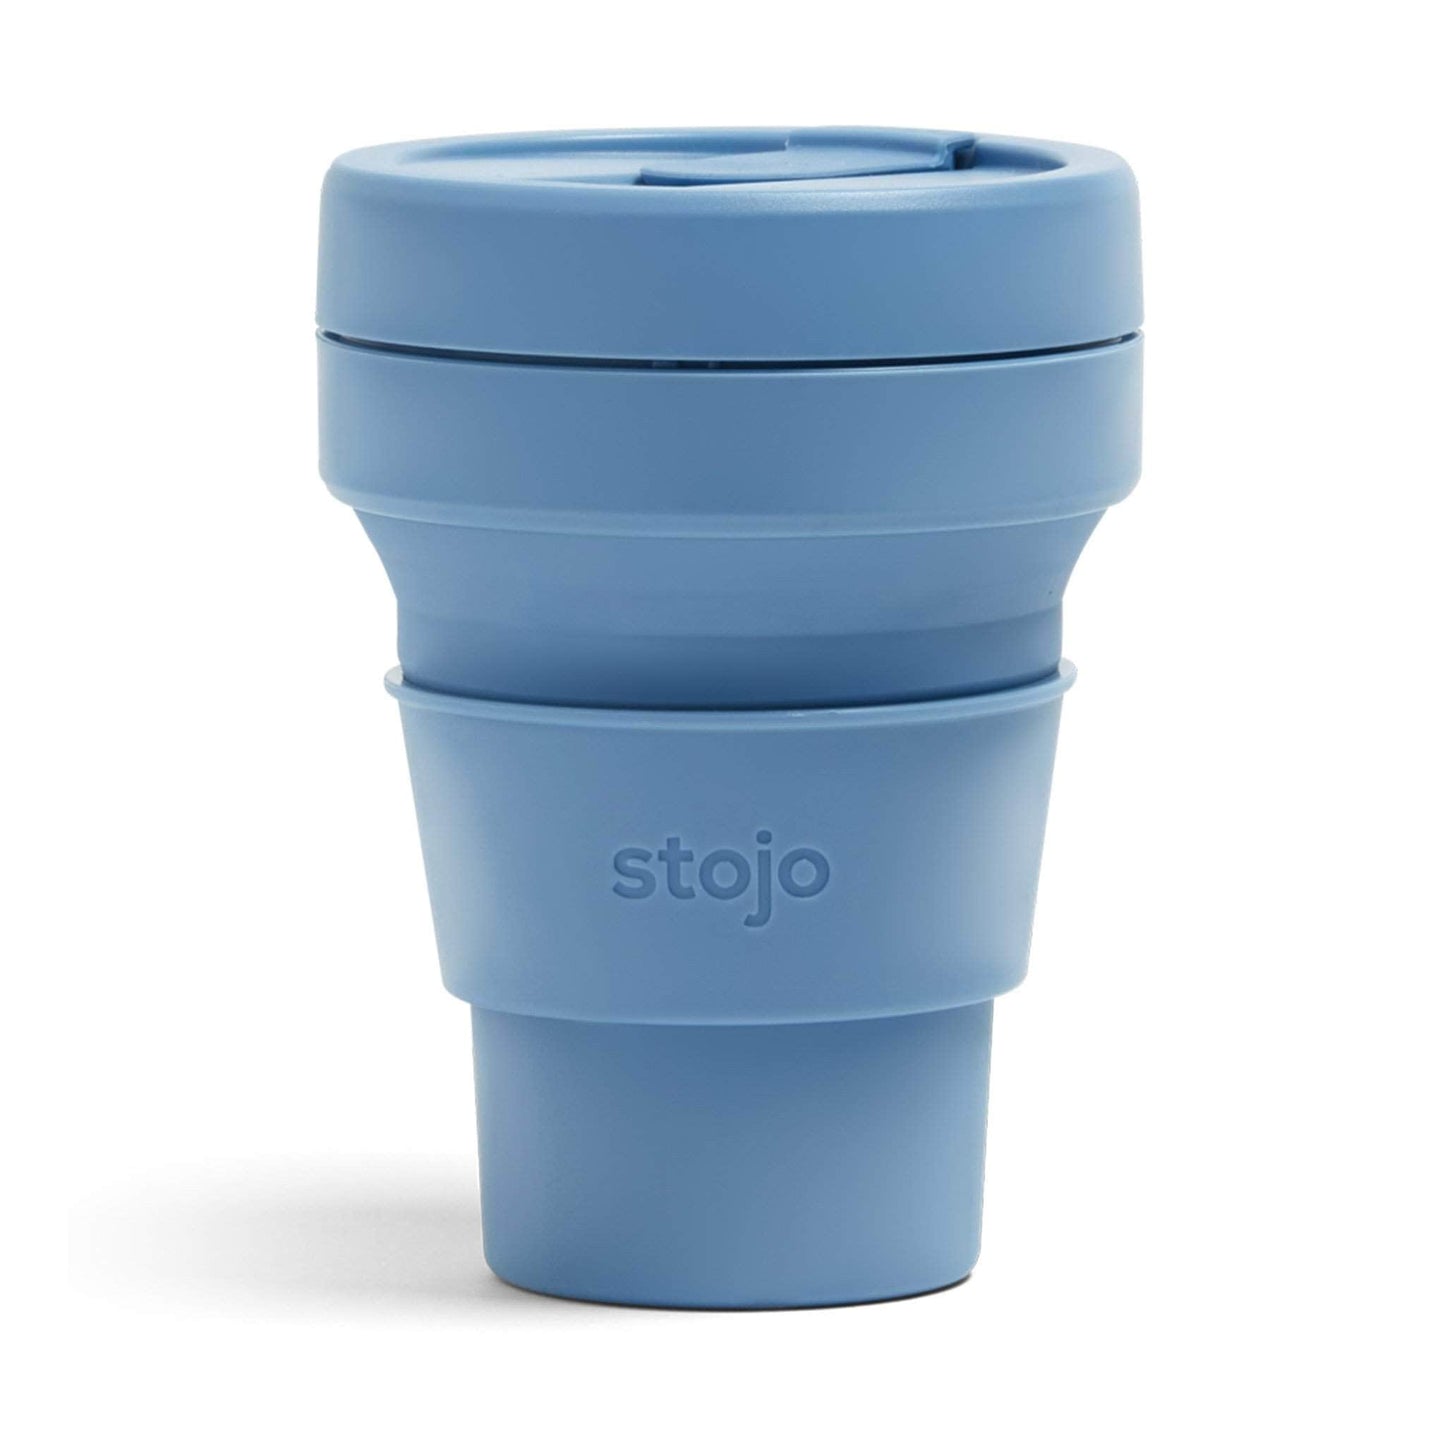 Stojo Coffee Cups Stojo Collapsible & Reusable Travel Mug 12oz/355ml - Steel Blue